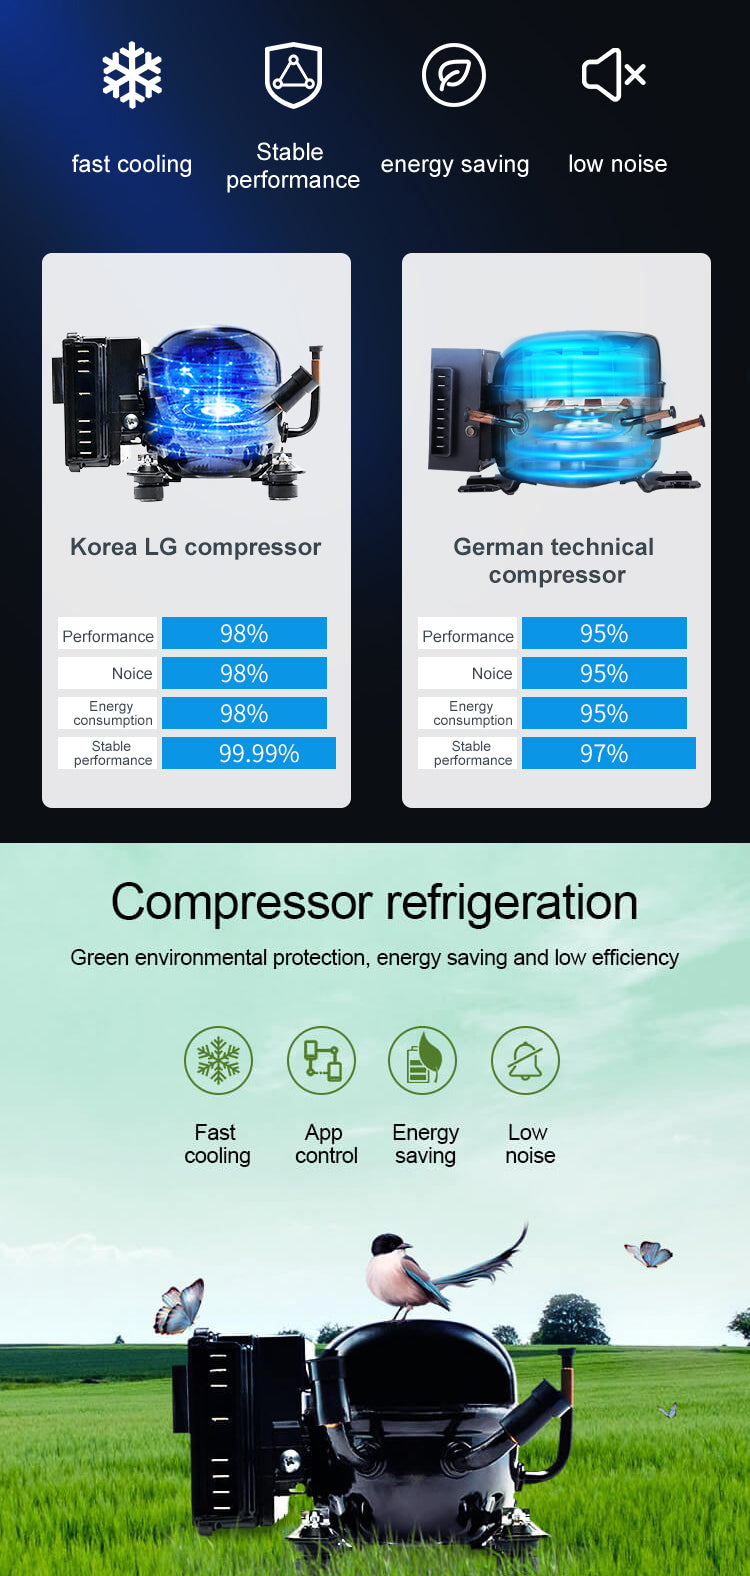 LG Compressor